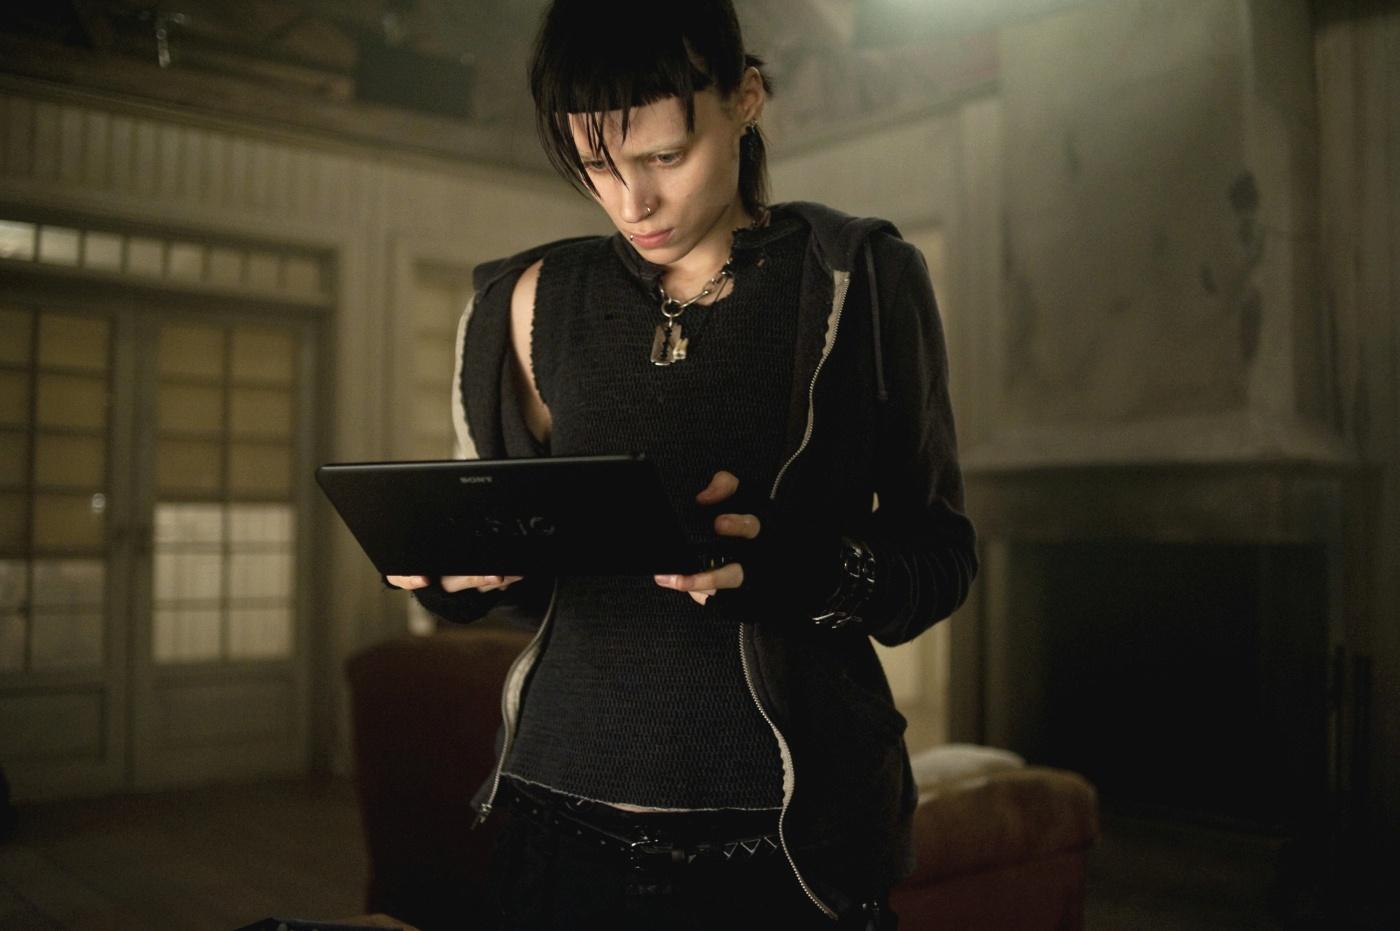 Også Rooney Mara har forsøkt seg i rollen, i den amerikanske versjonen «The Girl With The Dragon Tattoo», med Daniel Craig som motspiller.